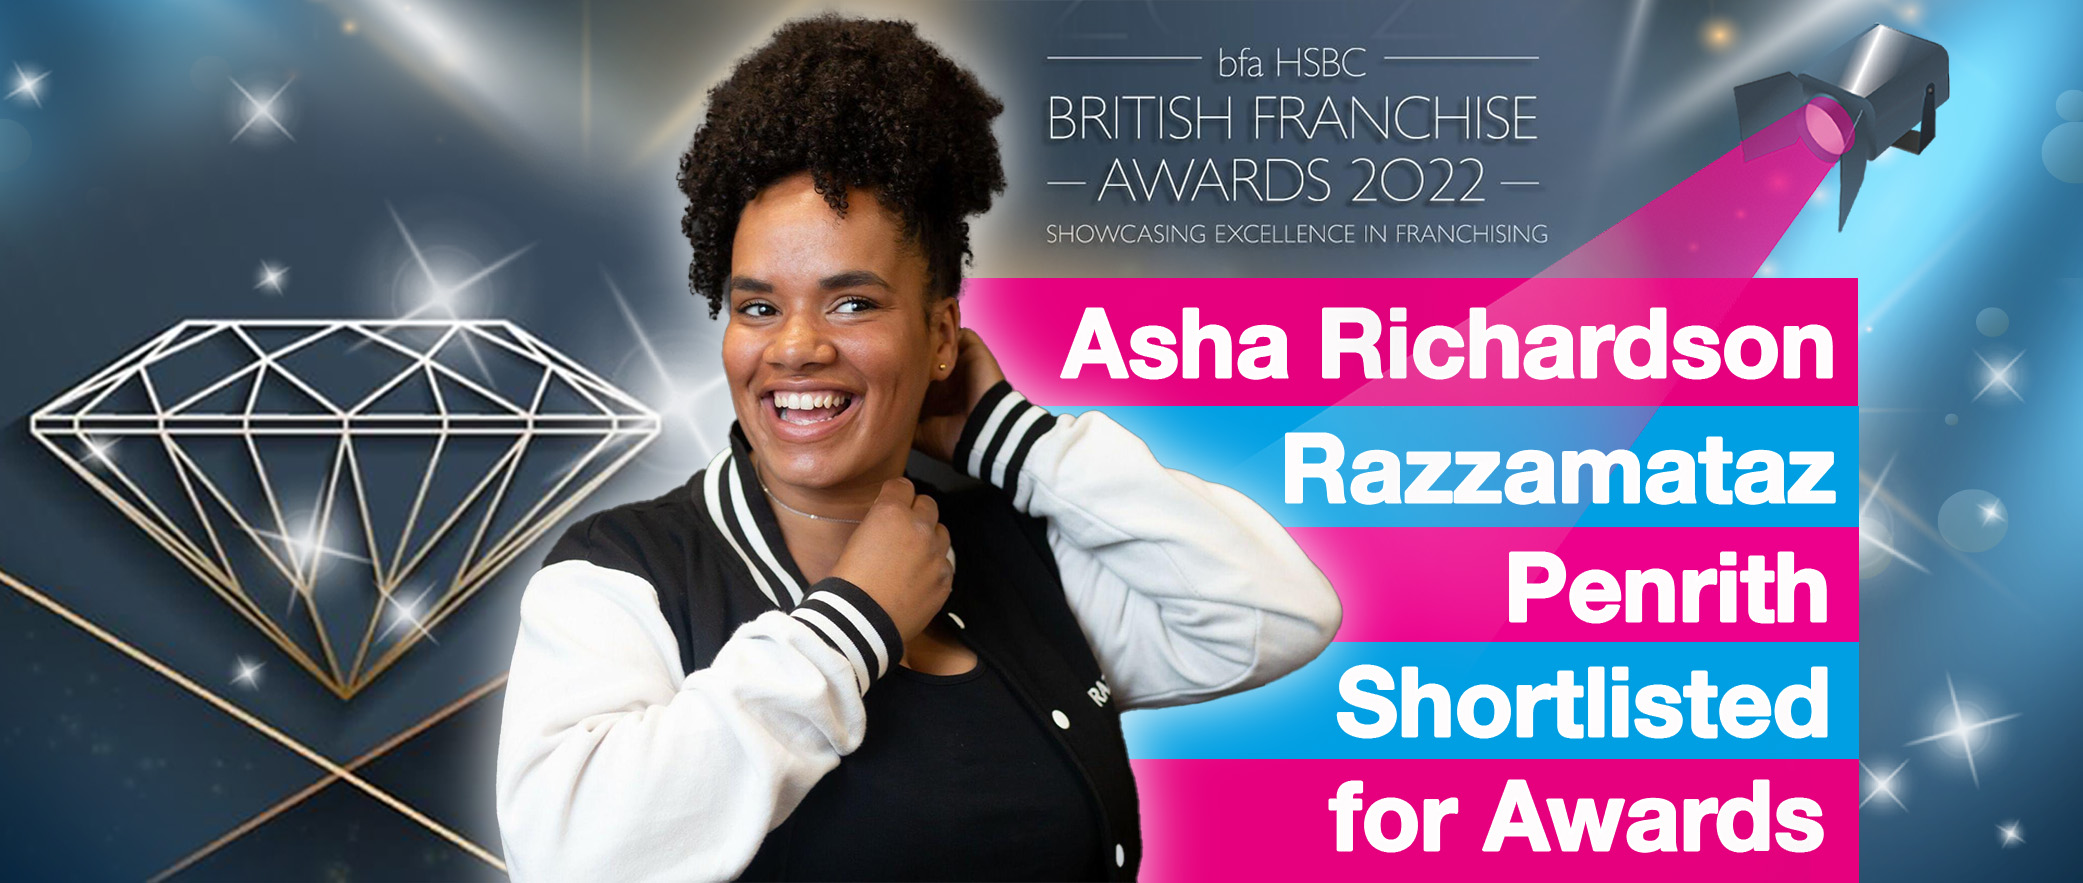 Asha Richardson Razzamataz Penrith Shortlisted for Awards